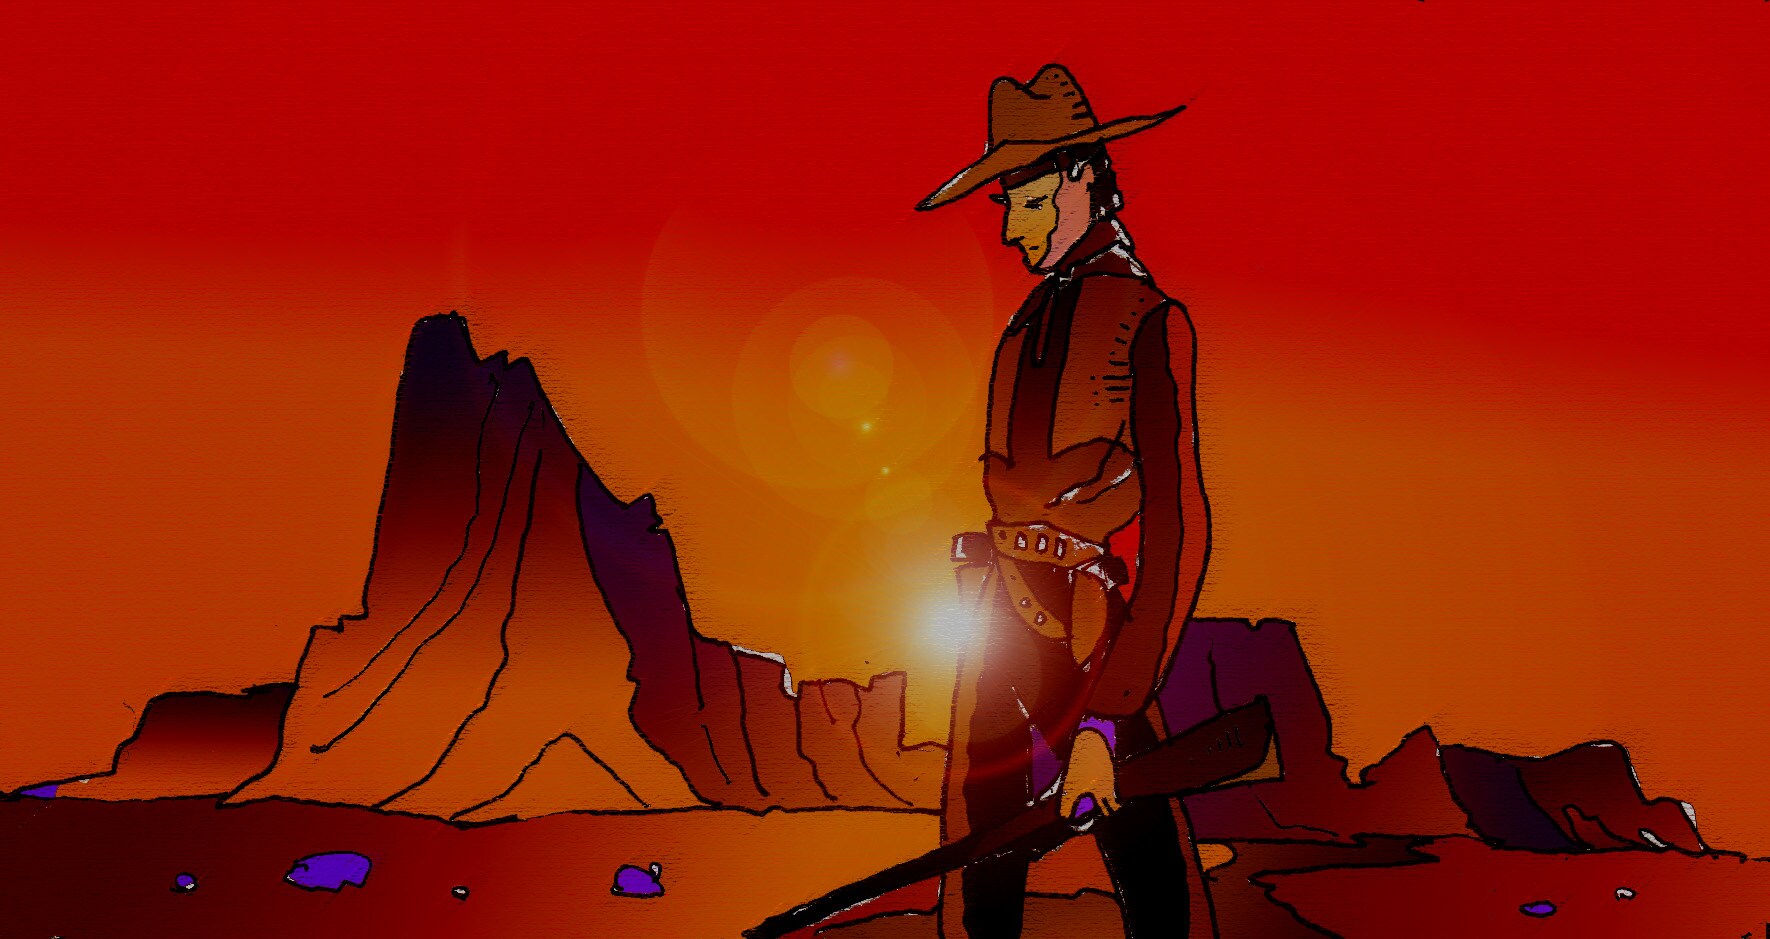 Immagine in piano americano di un cowboy (Per leggerne la descrizione proseguire nel link). Si vede un cowboy, in piano americano, sullo sfondo di un deserto roccioso. Tutta l'immagine è pervasa da un luminoso colore rosso di un tramonto infuocato che tinge le rocce e il profilo del cowboy.